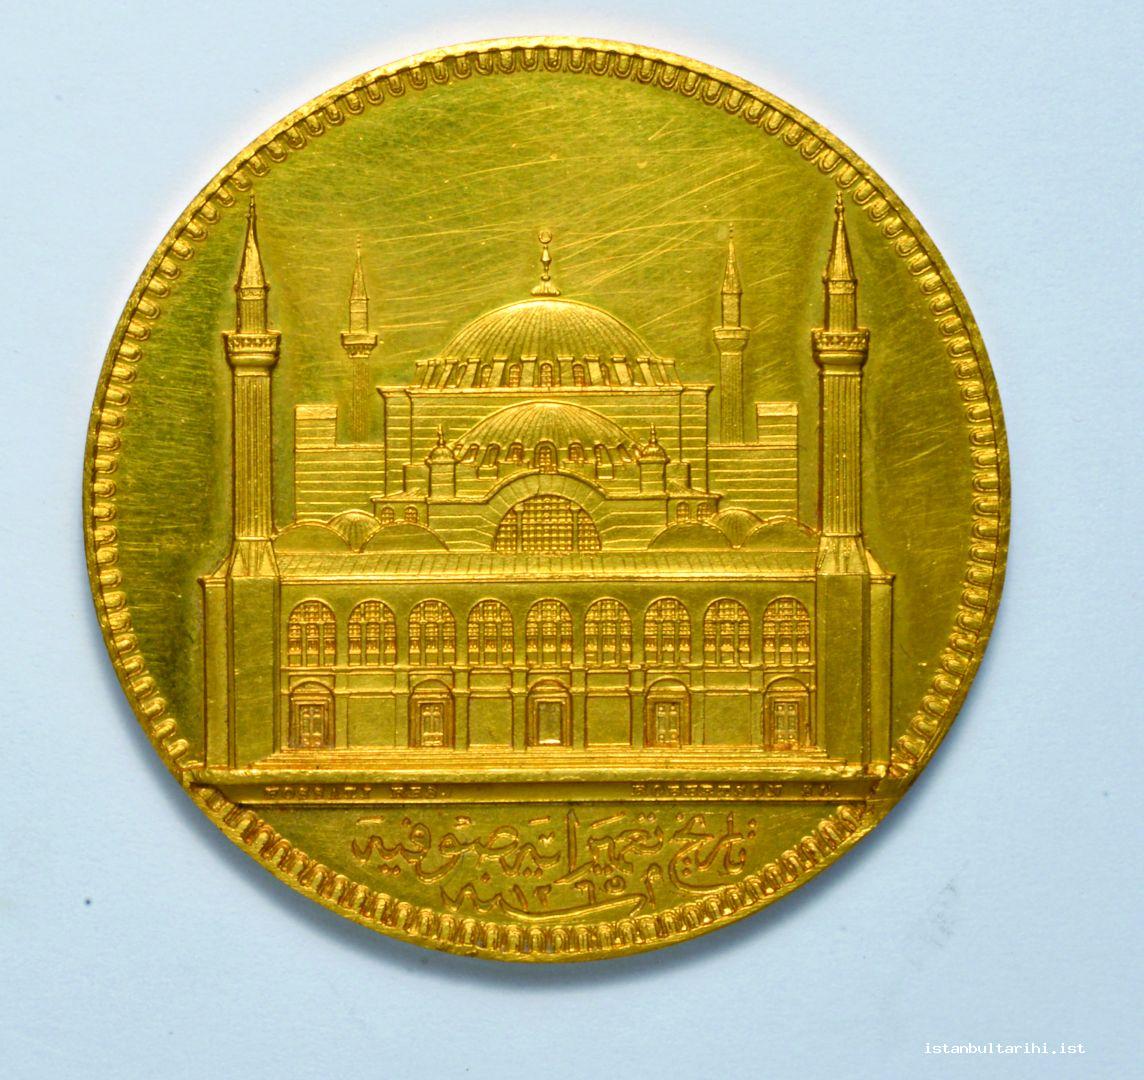 8- Sultan Abdülmecid tarafından tamir edilen Ayasofya’nın hatıra madalyasının ön ve arka yüzü (İstanbul Arkeoloji Müzesi Sikkeler Bölümü)